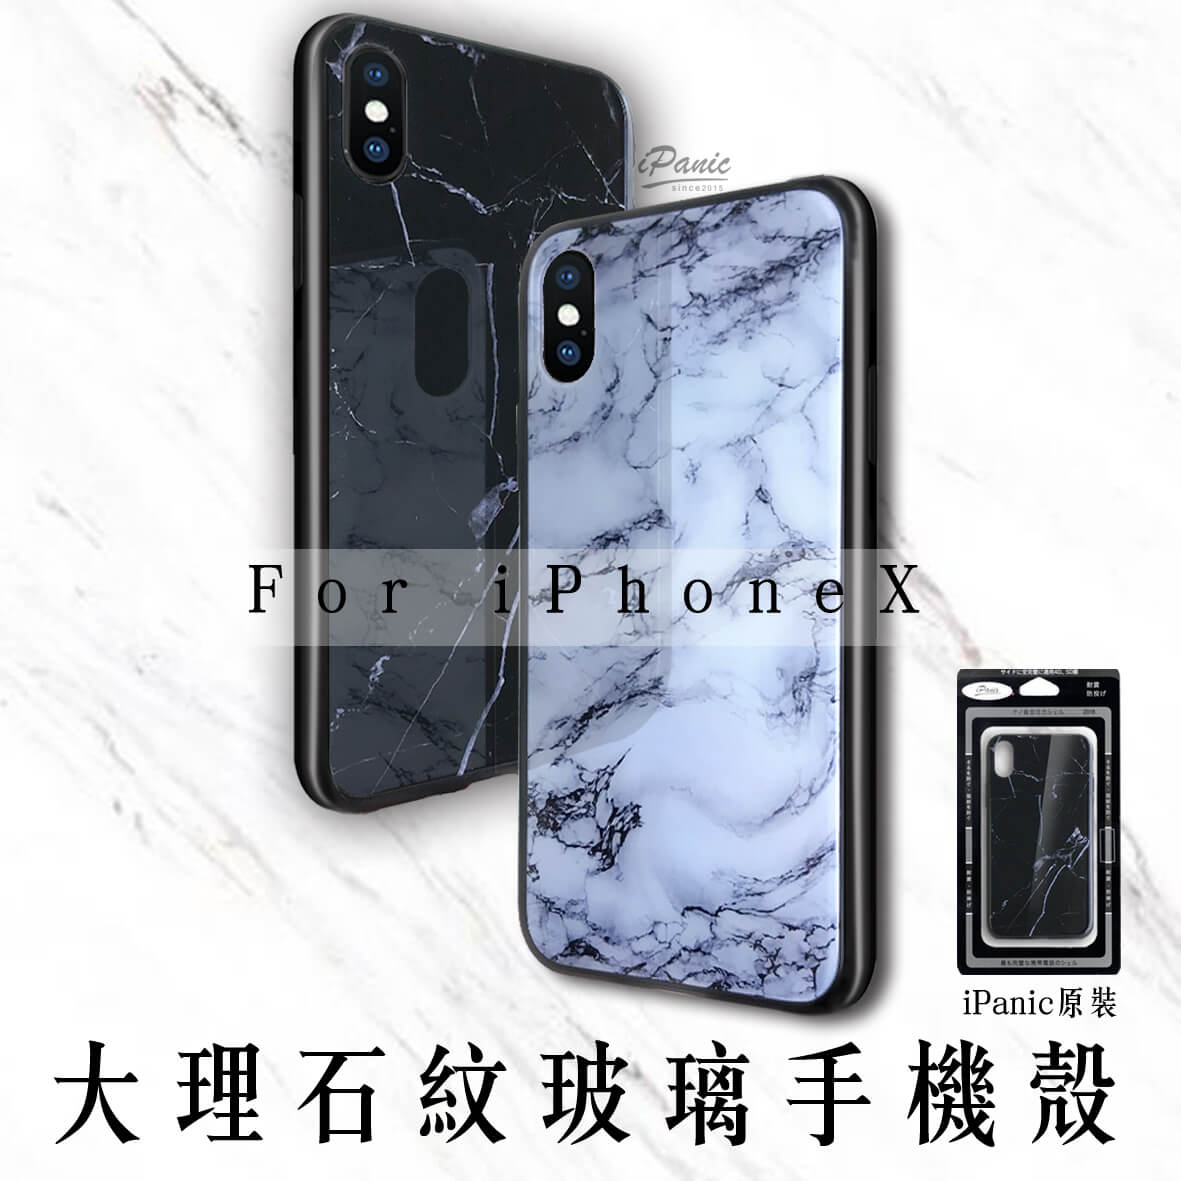 iPhoneX 大理石紋 玻璃手機殼 大理石手機殼 手機殼 玻璃手機殼 iPanic 大理石紋 玻璃鏡面 鏡面【APP下單4%點數回饋】